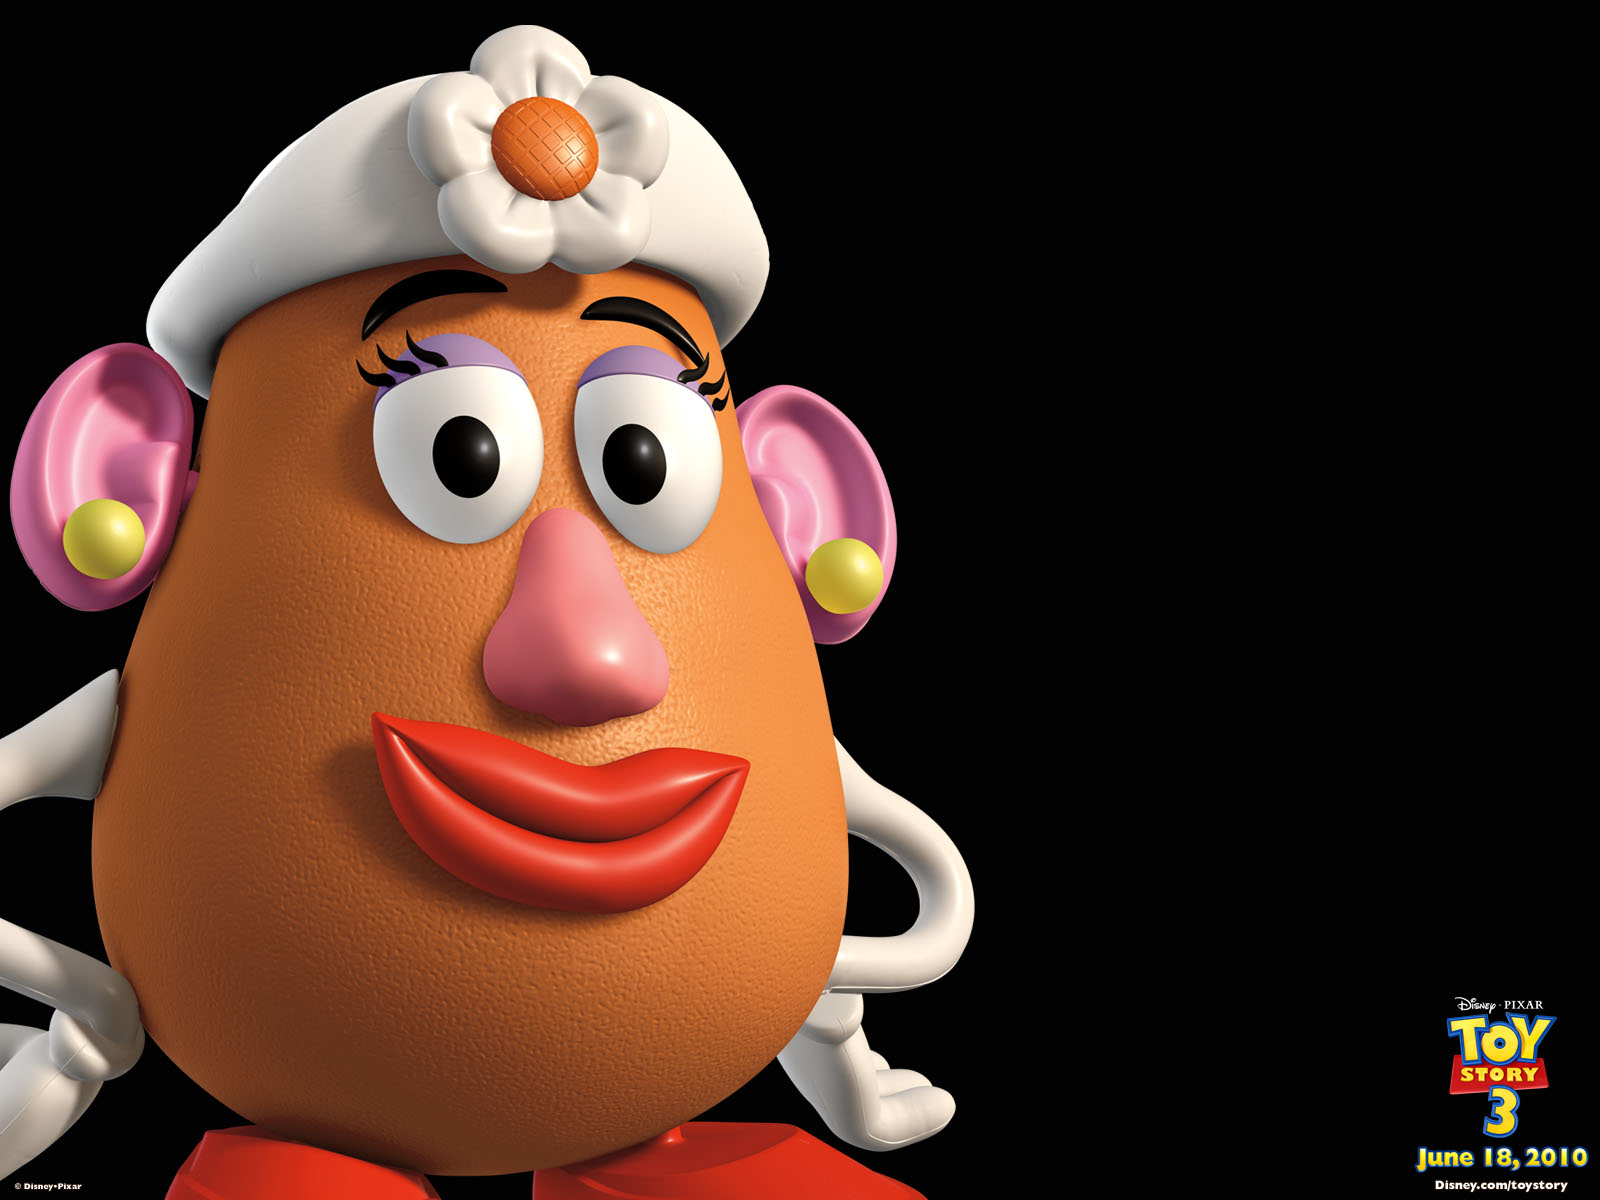 Mrs. Potato Head, Toy Story fanom Wiki